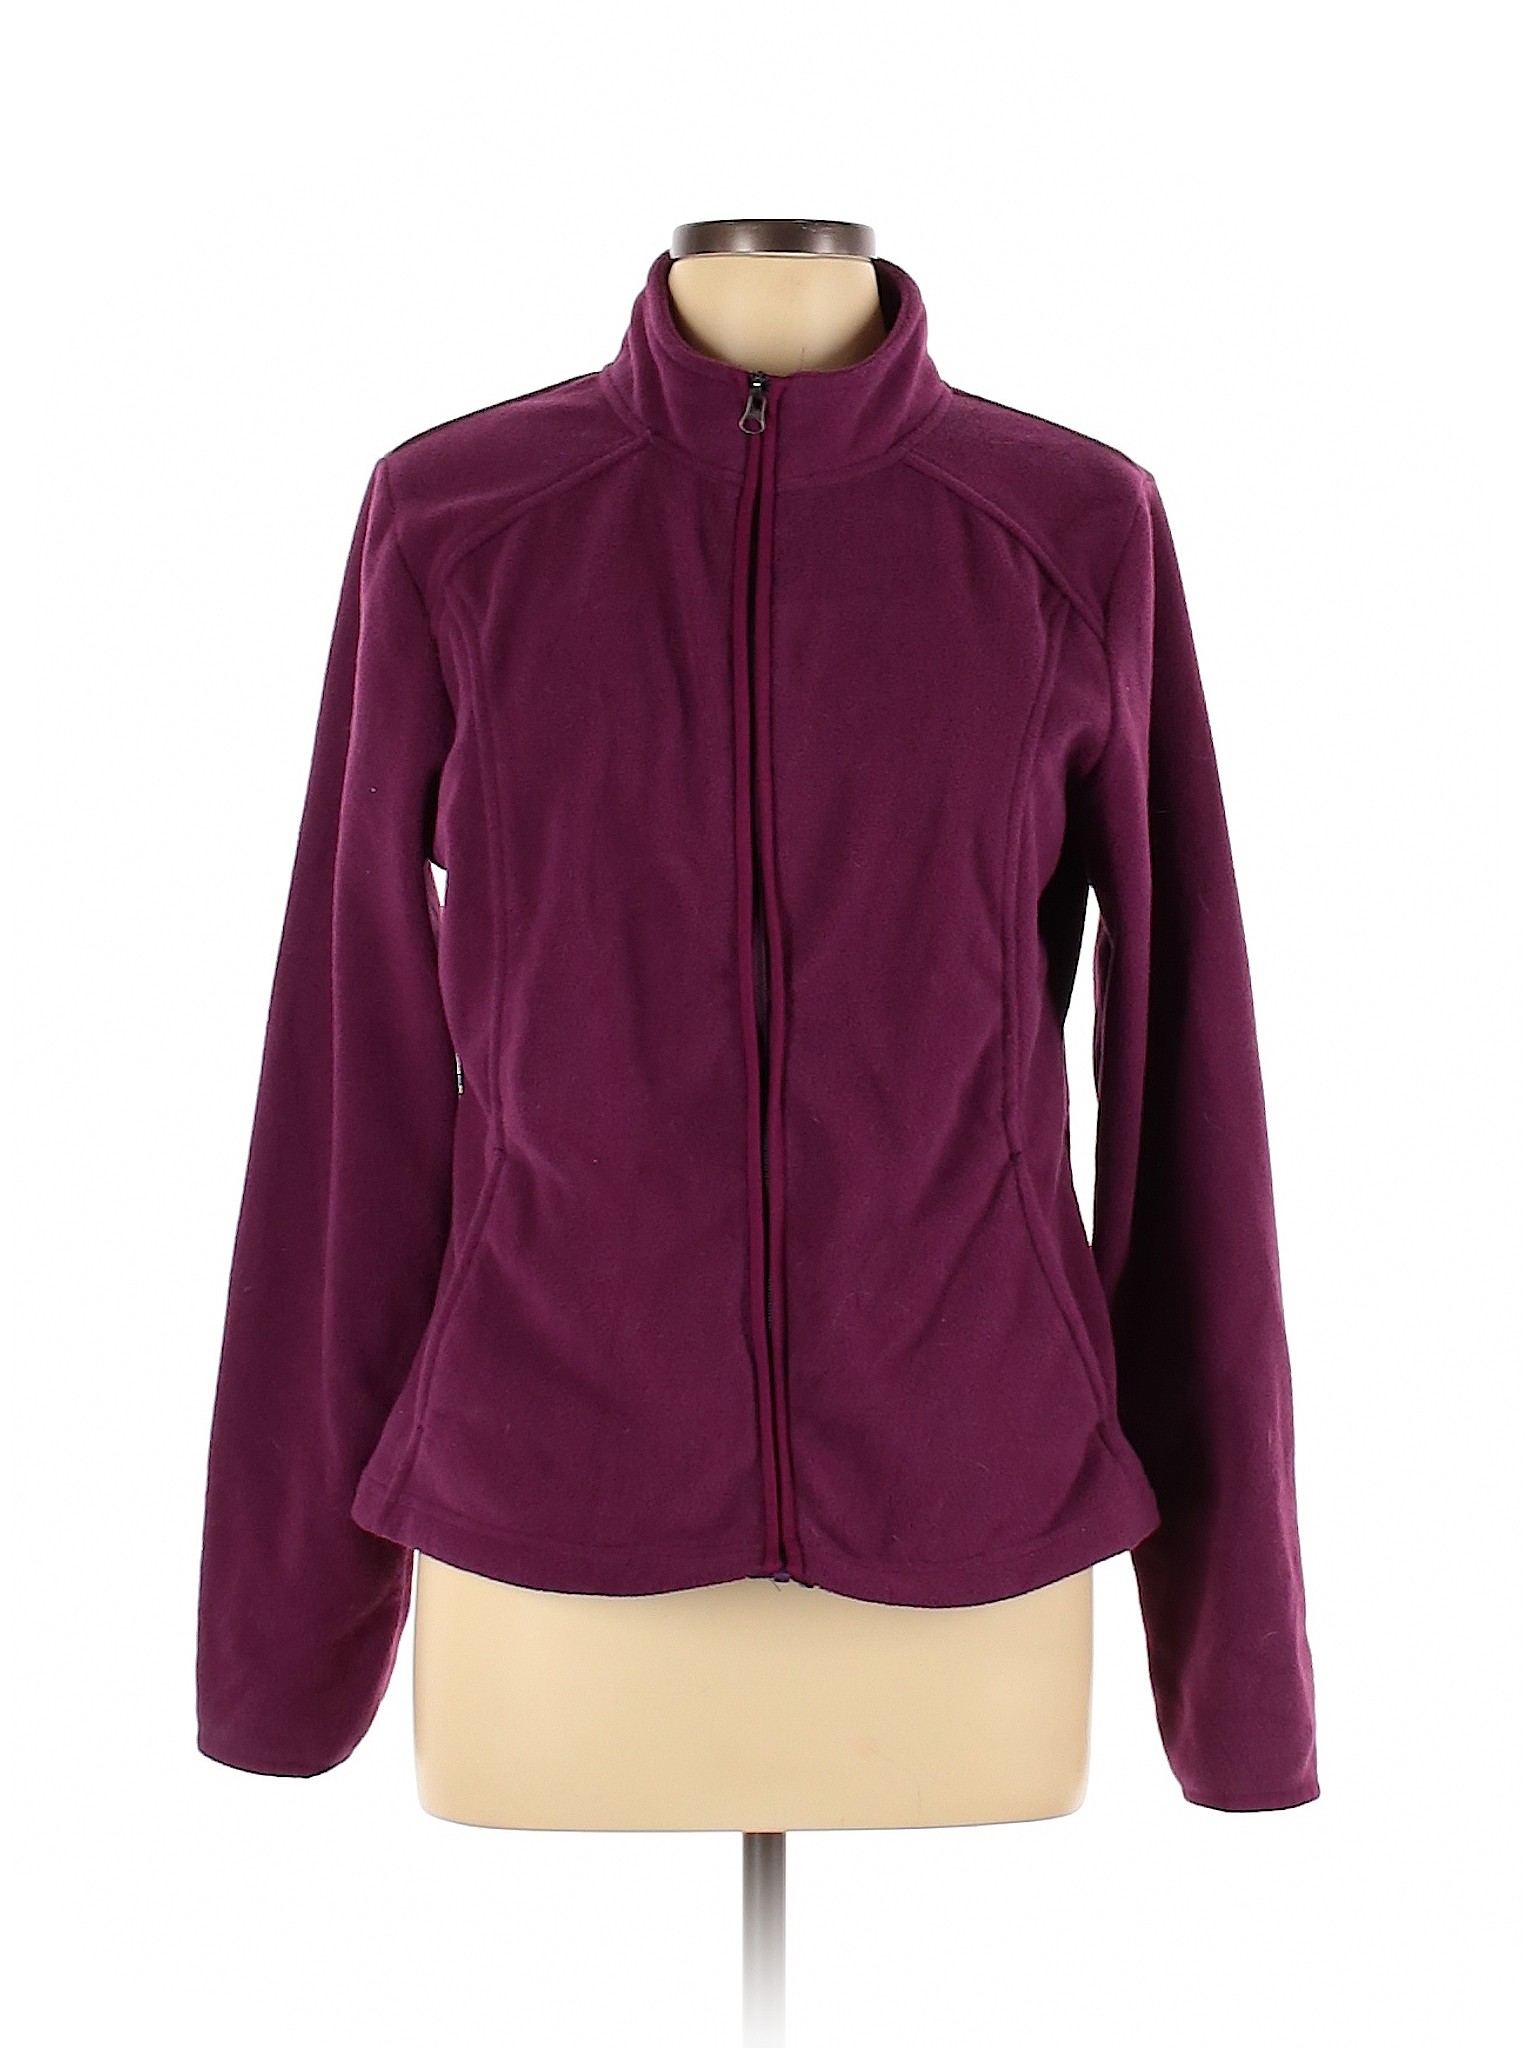 Merona Women Purple Fleece L | eBay